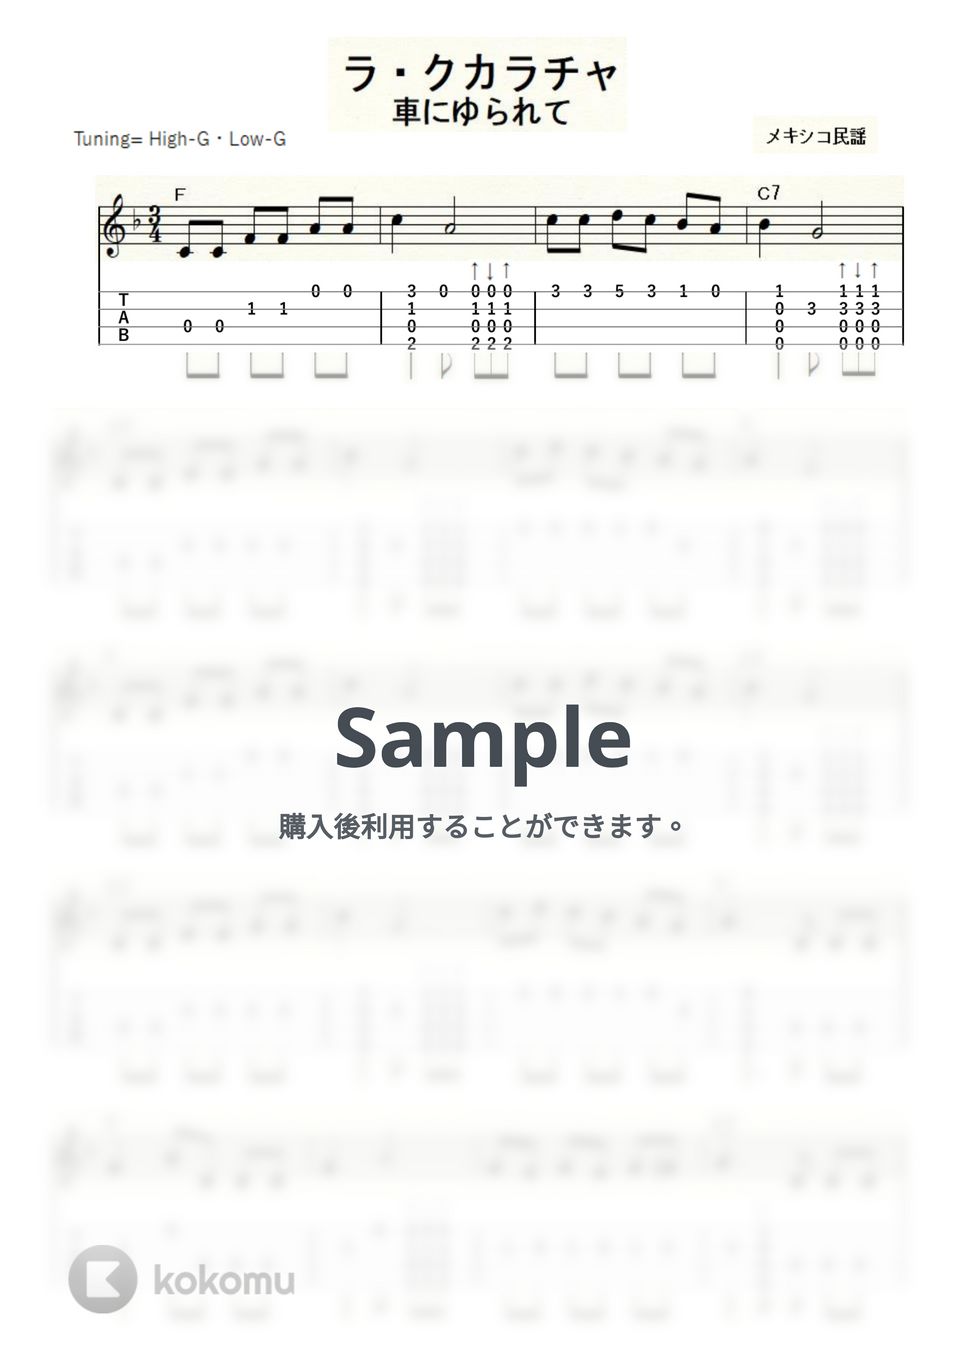 ラ・クカラチャ (ｳｸﾚﾚｿﾛ/High-G・Low-G/中級) by ukulelepapa